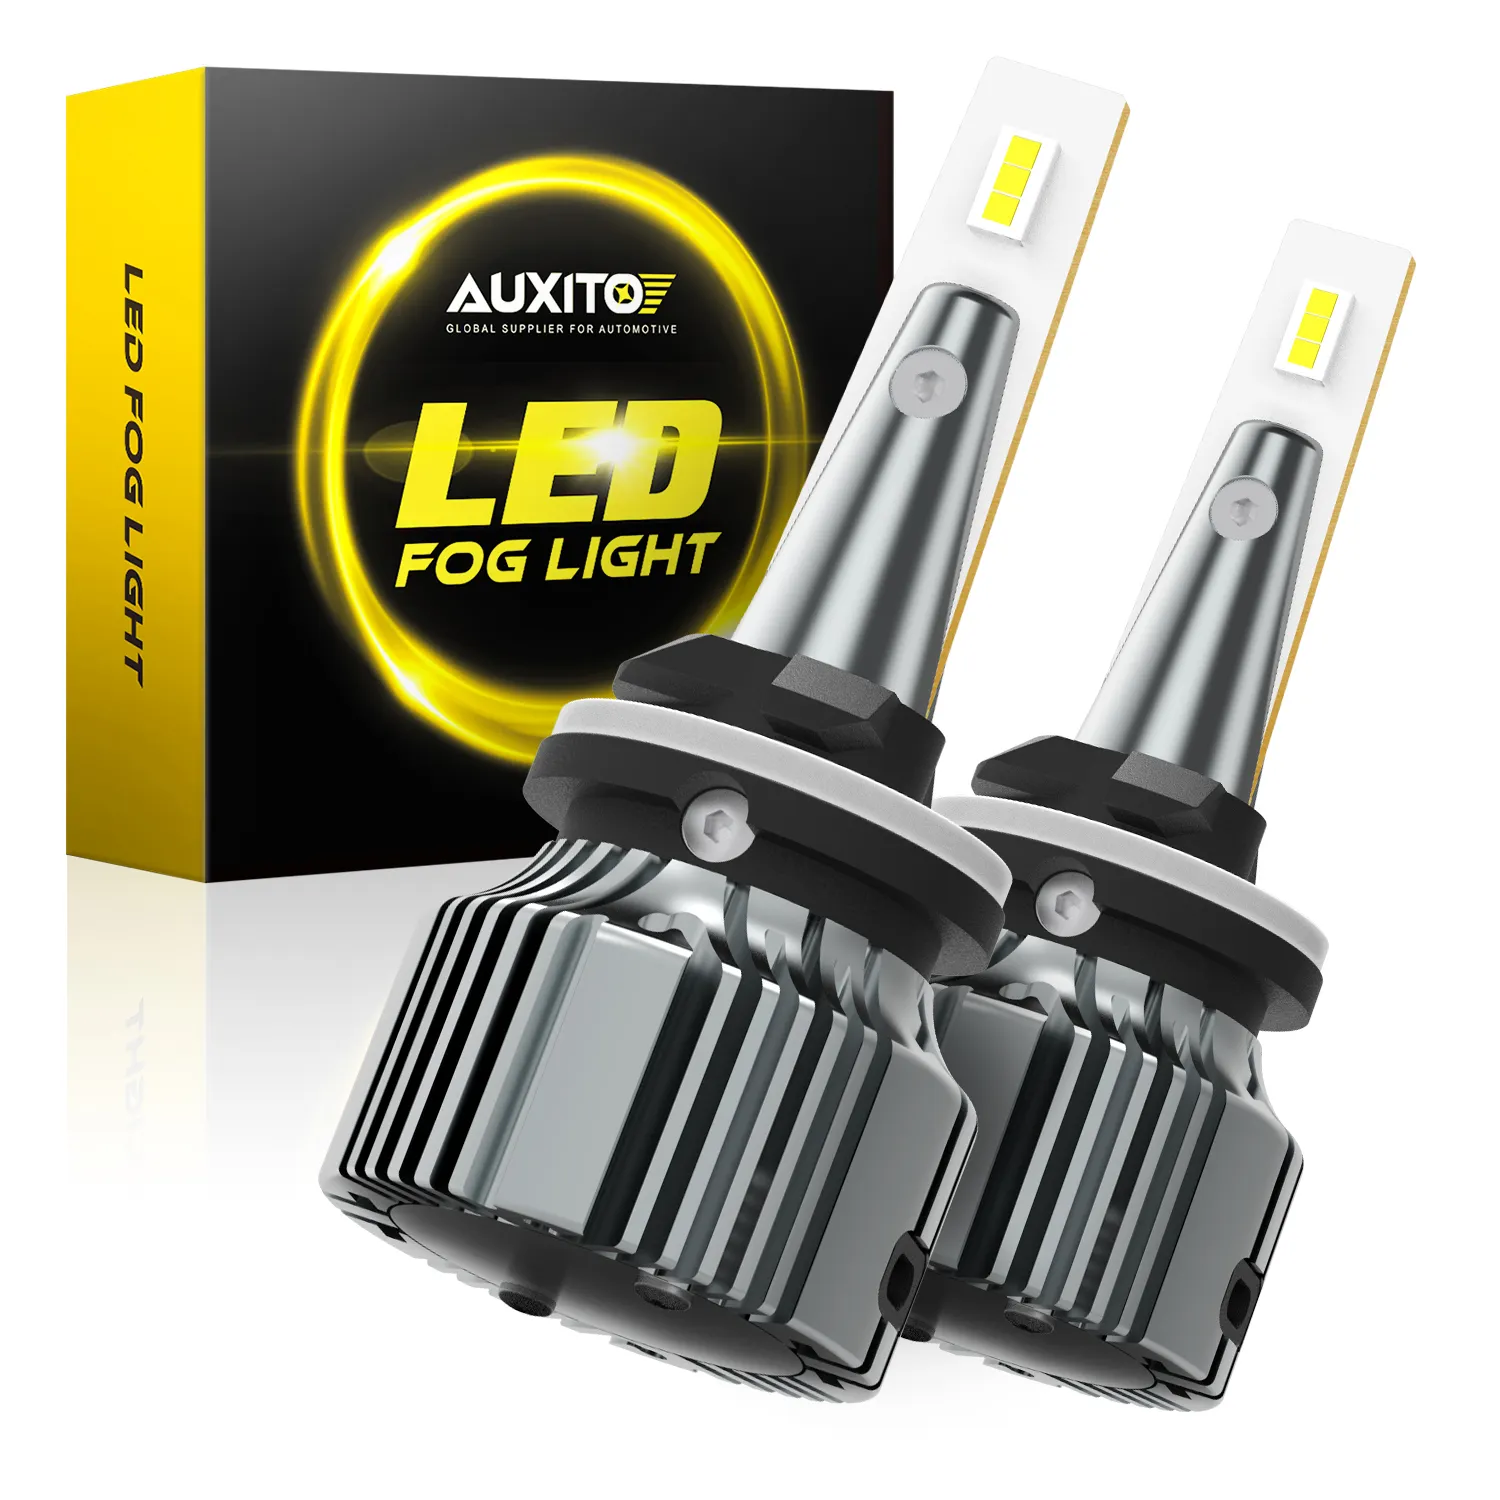 AUXITO 881 889 LED sis işık DRL ampul 6000K serin beyaz 300% parlak araba için